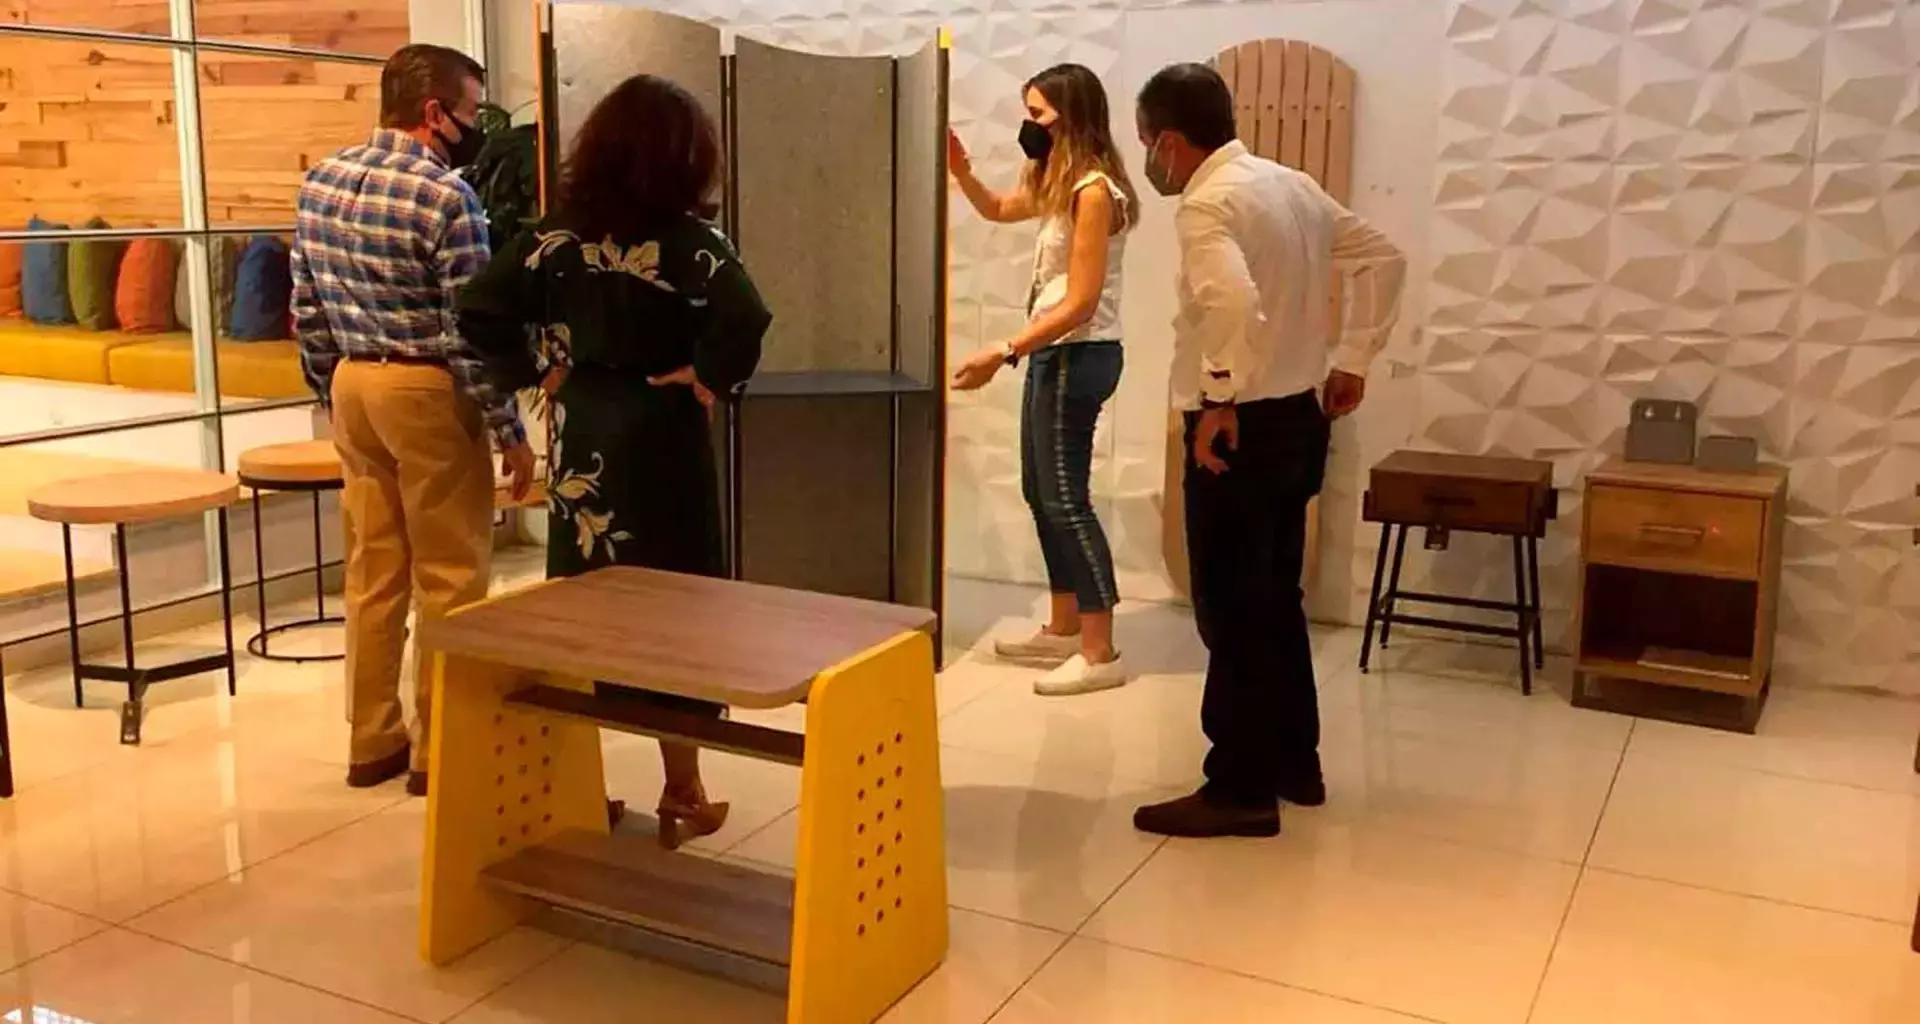 Alumnos del Tec Guadalajara crearon y expondrán en nueva york muebles para el home office.